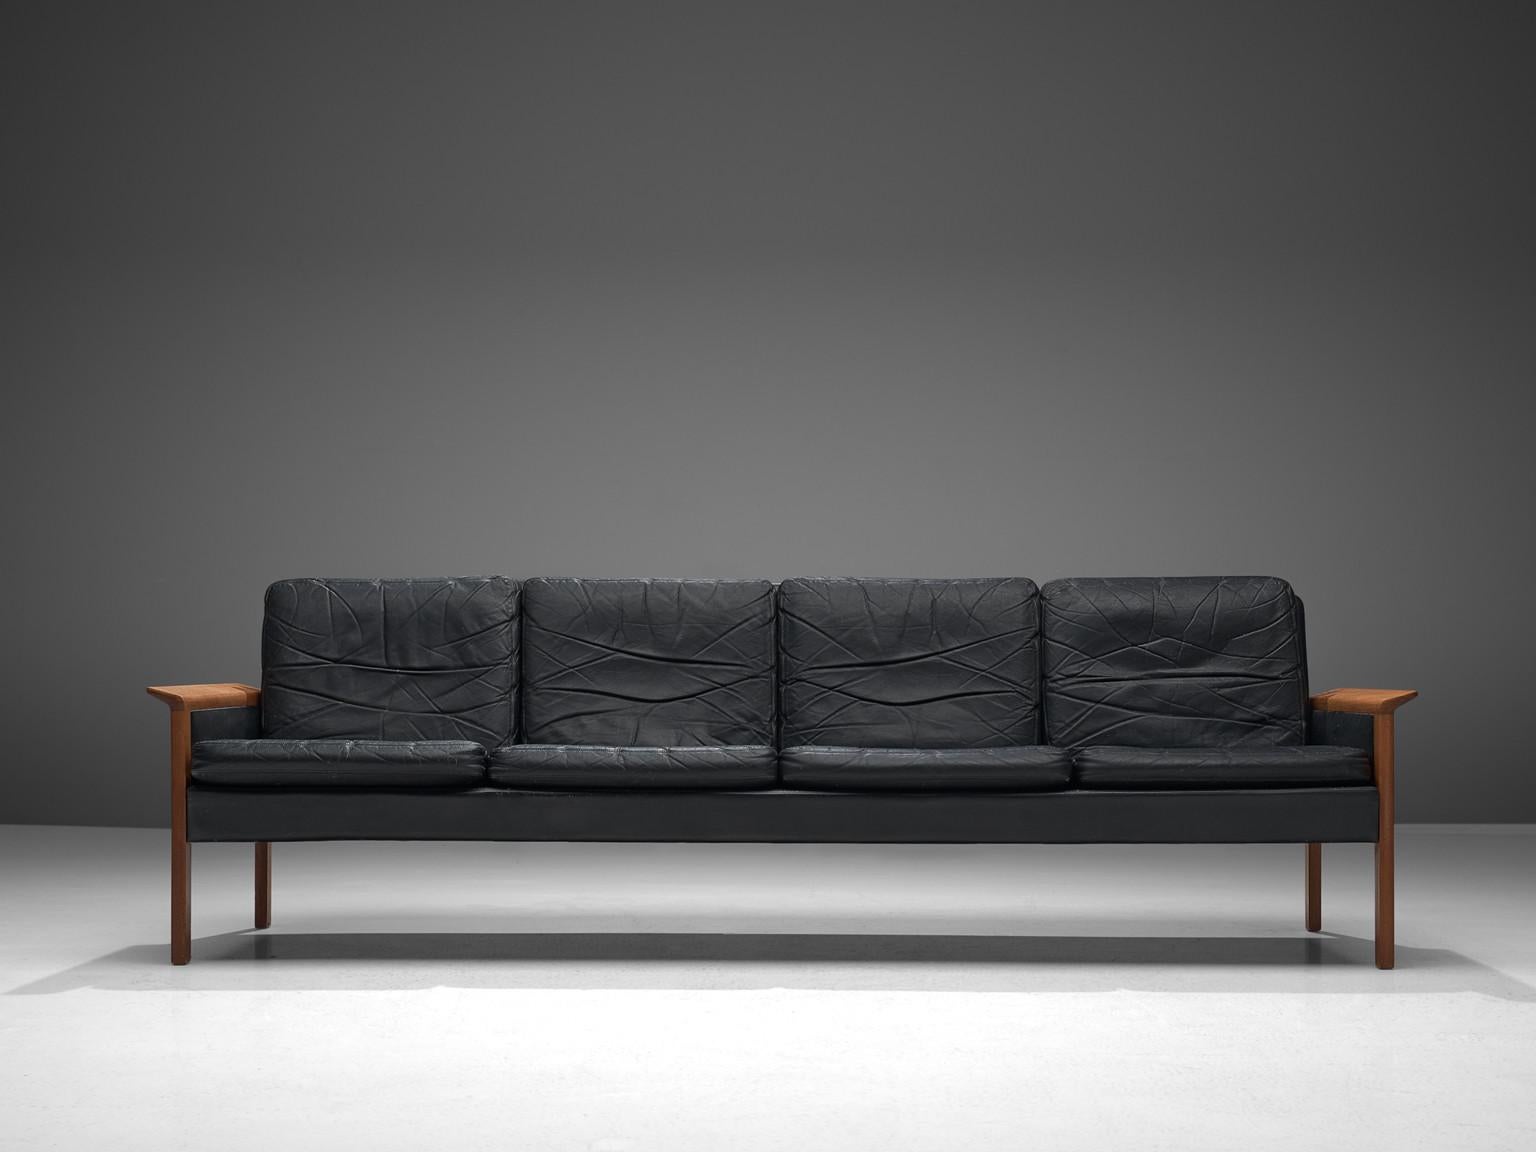 Hans Olsen pour Brande, cuir, teck, Danemark, vers 1960

Ce canapé quatre places en cuir a été conçu par le Danois Hans Olsen pour Brande. Le canapé est exécuté en cuir noir qui a été magnifiquement patiné par l'âge. Le canapé présente une